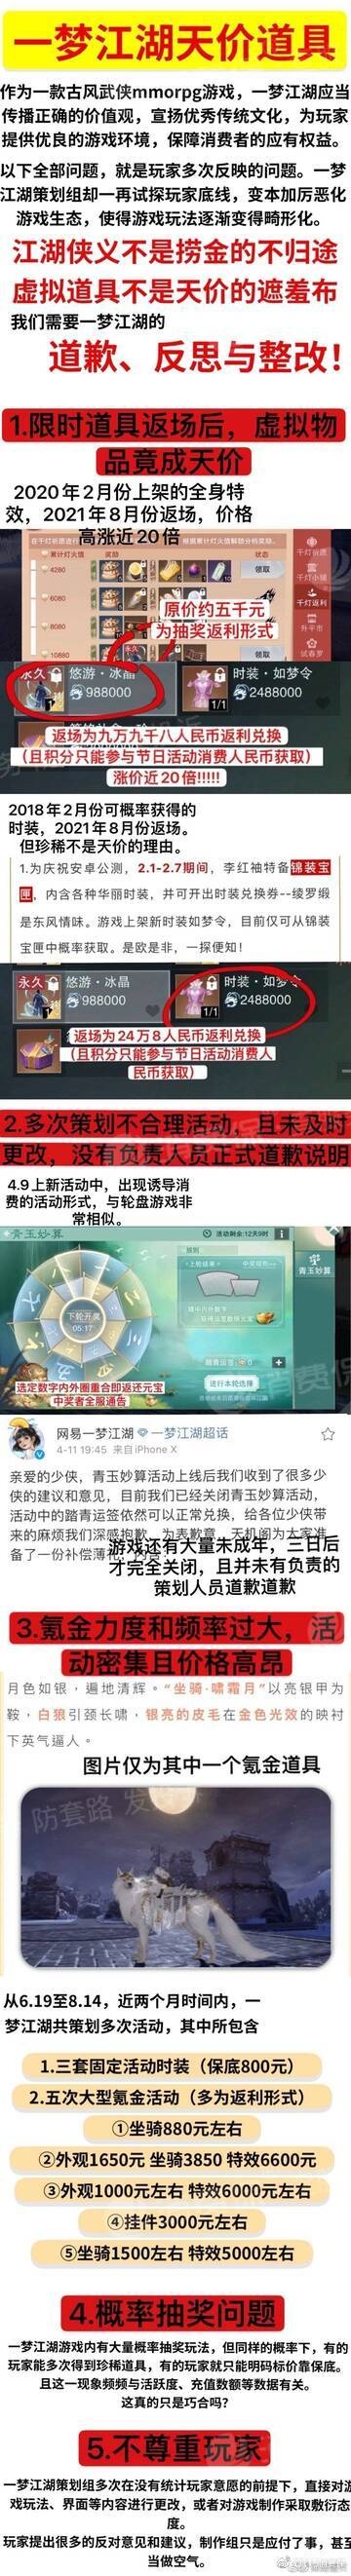 315消费保：网易一梦江湖游戏定价不合理 一套时装售价24.8万